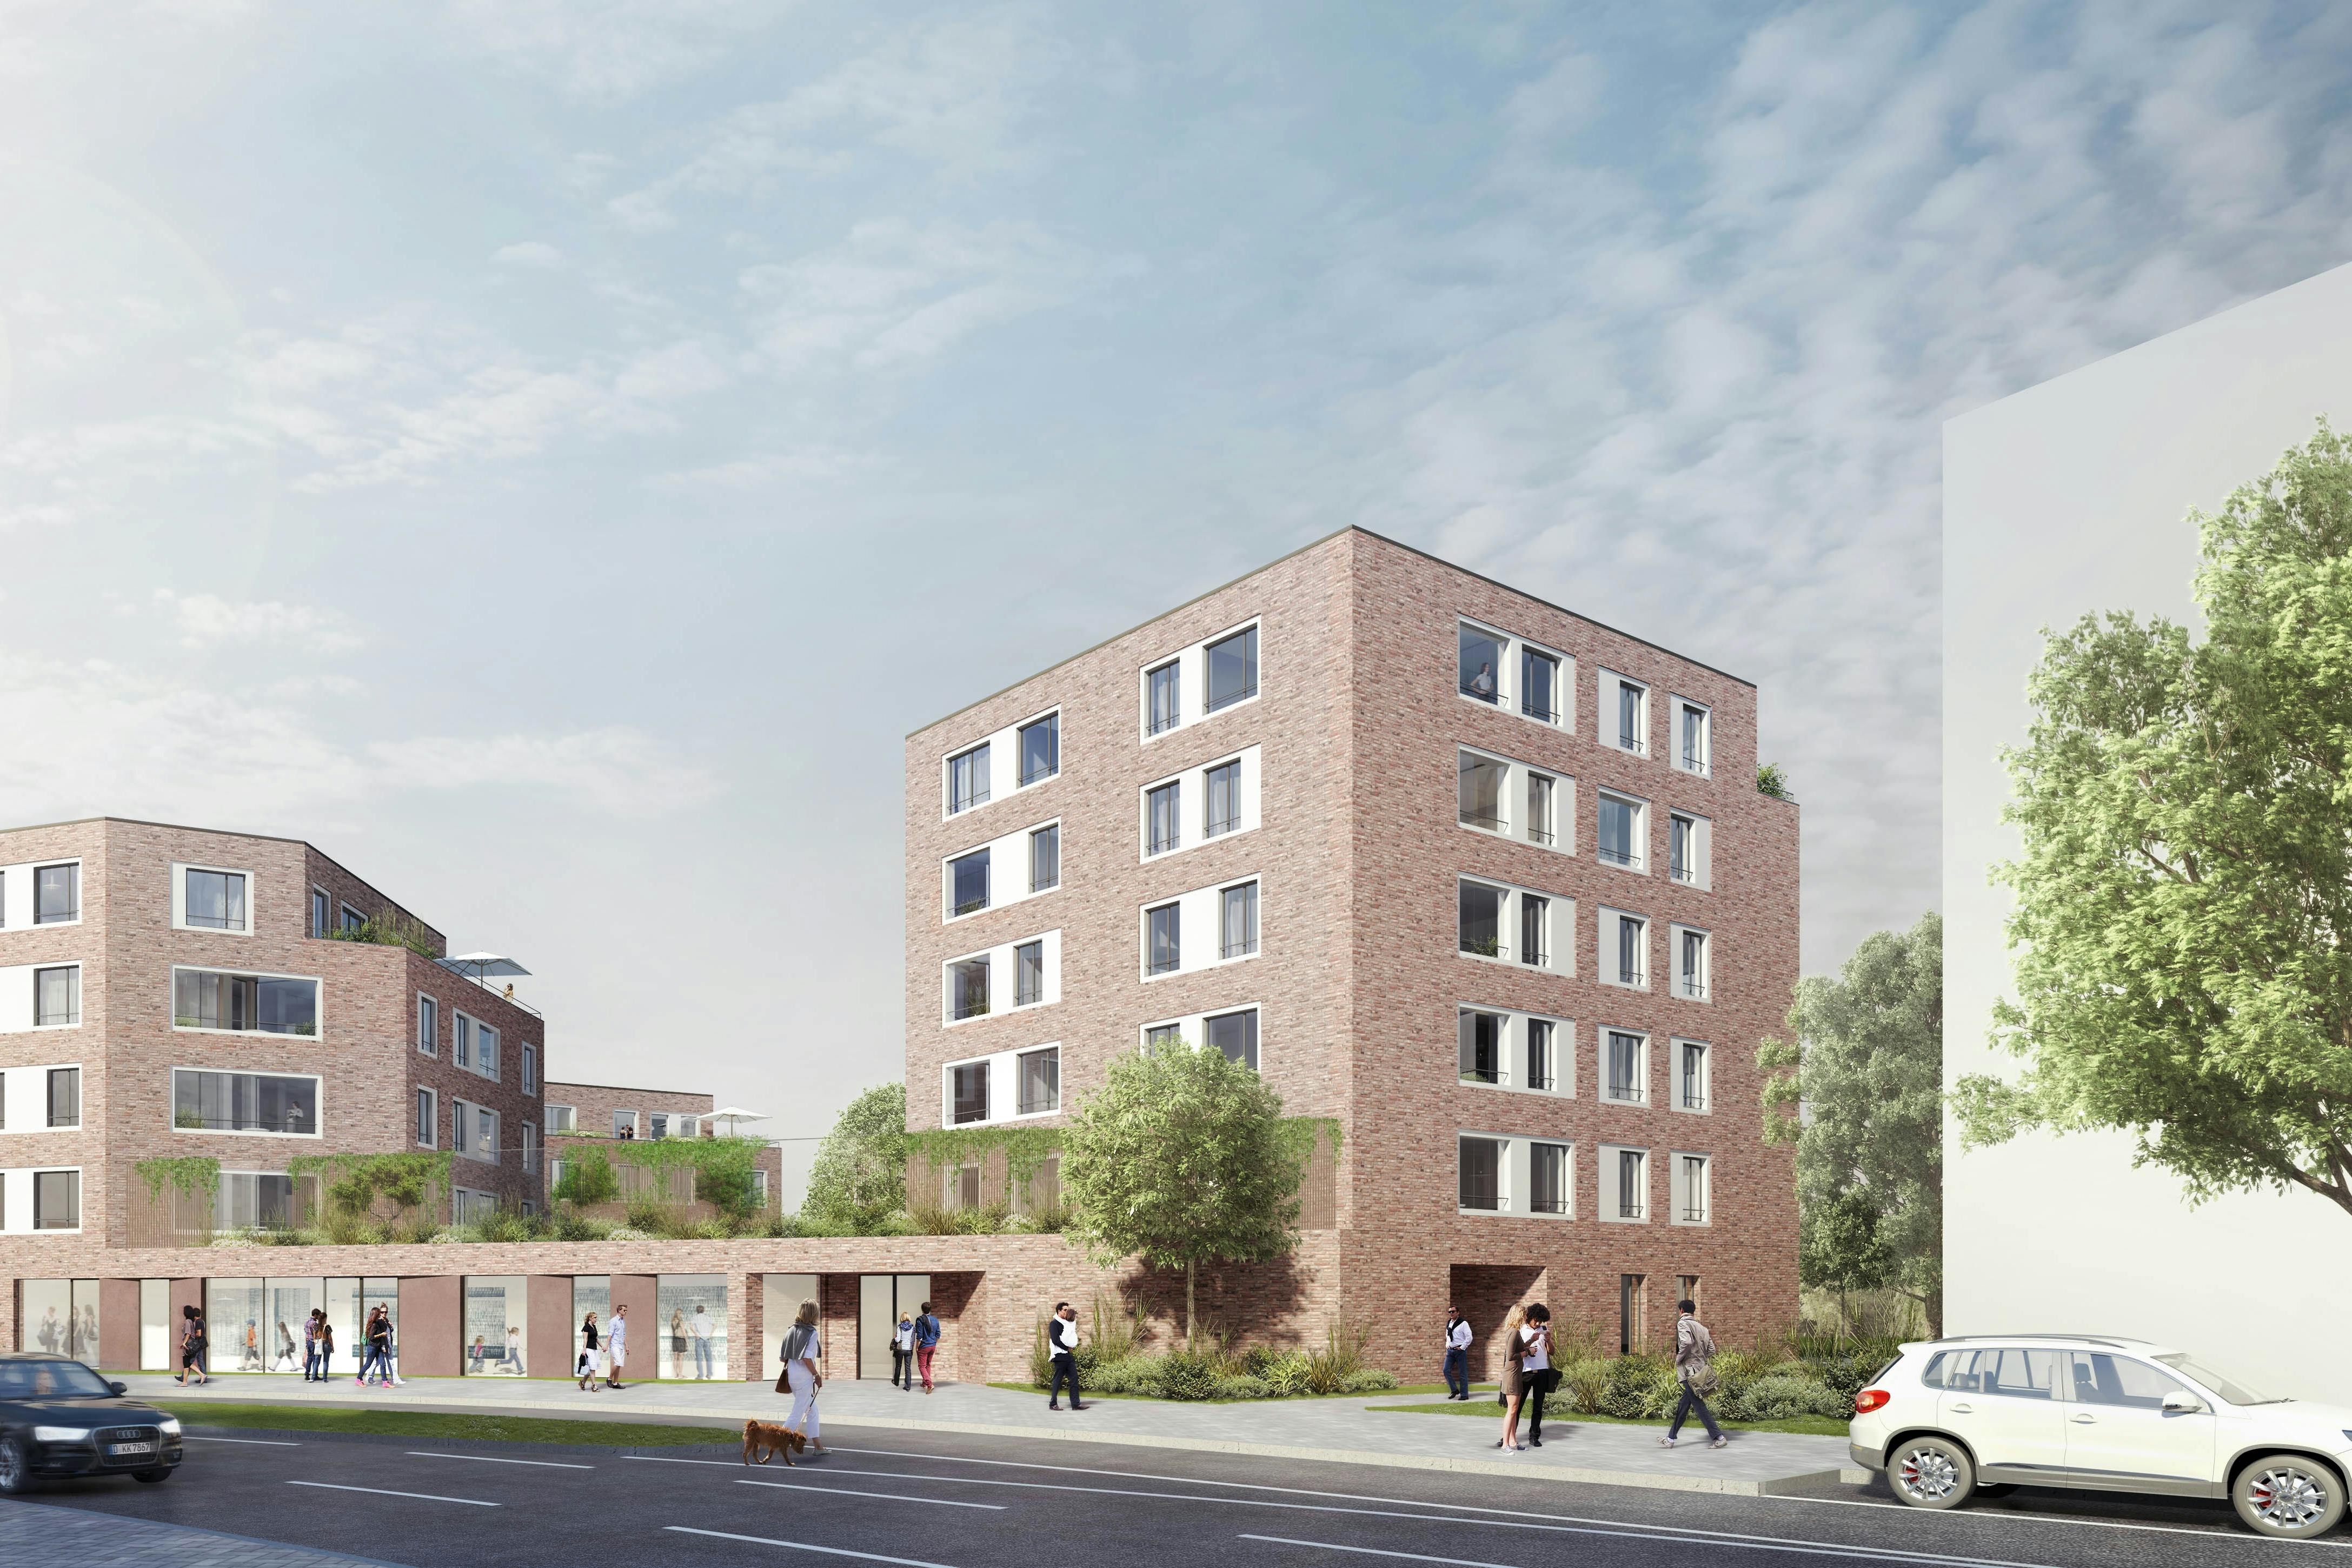 Wettbewerbsbeitrag HPP Architekten - Alexianer Quartier - Neues Wohnen auf dem Areal des ehemaligen St. Alexius-Krankenhauses in Neuss